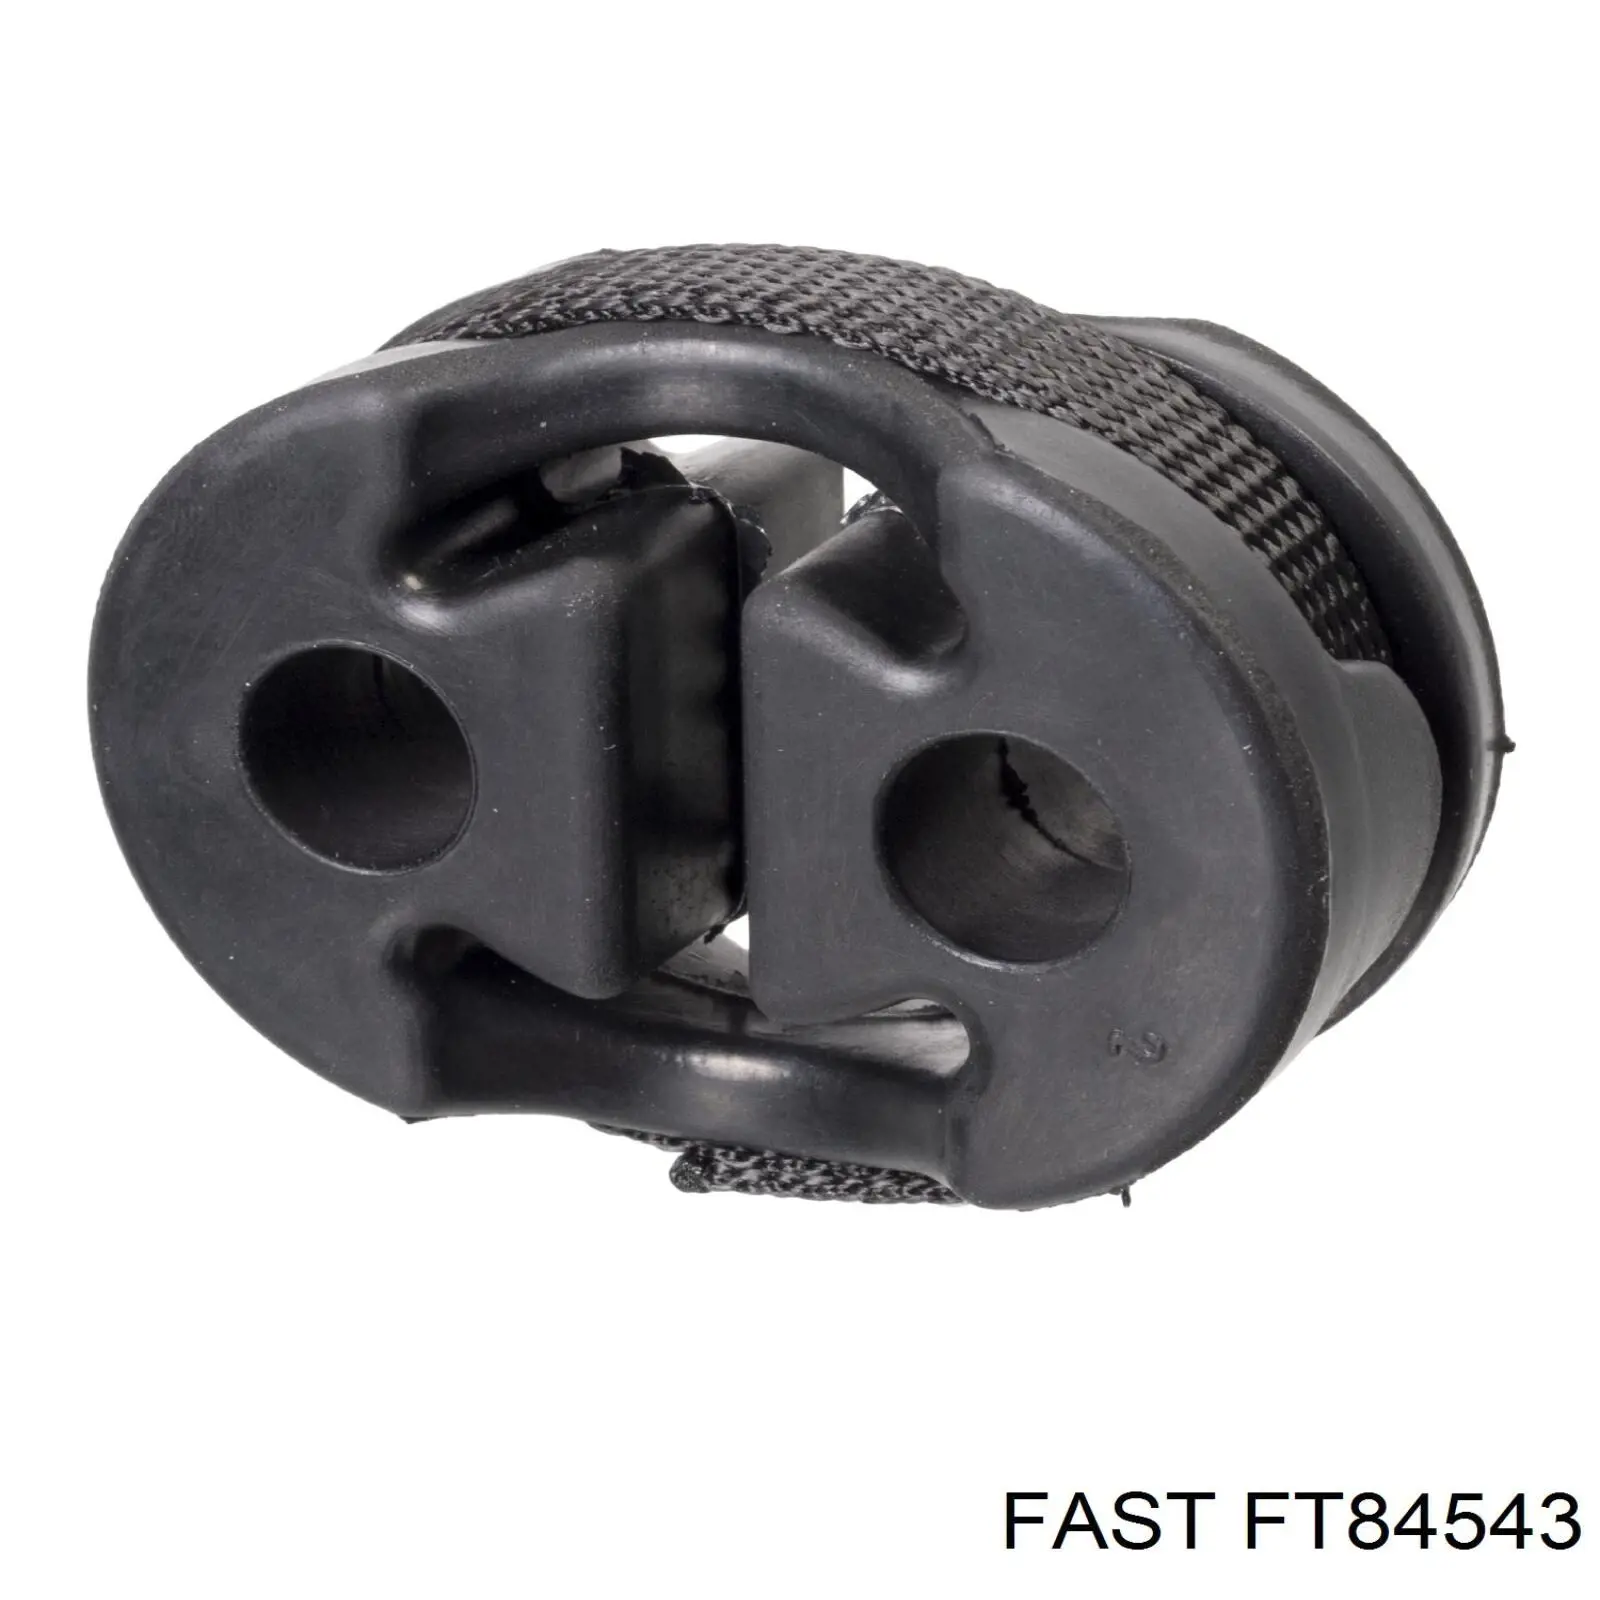 FT84543 Fast soporte escape